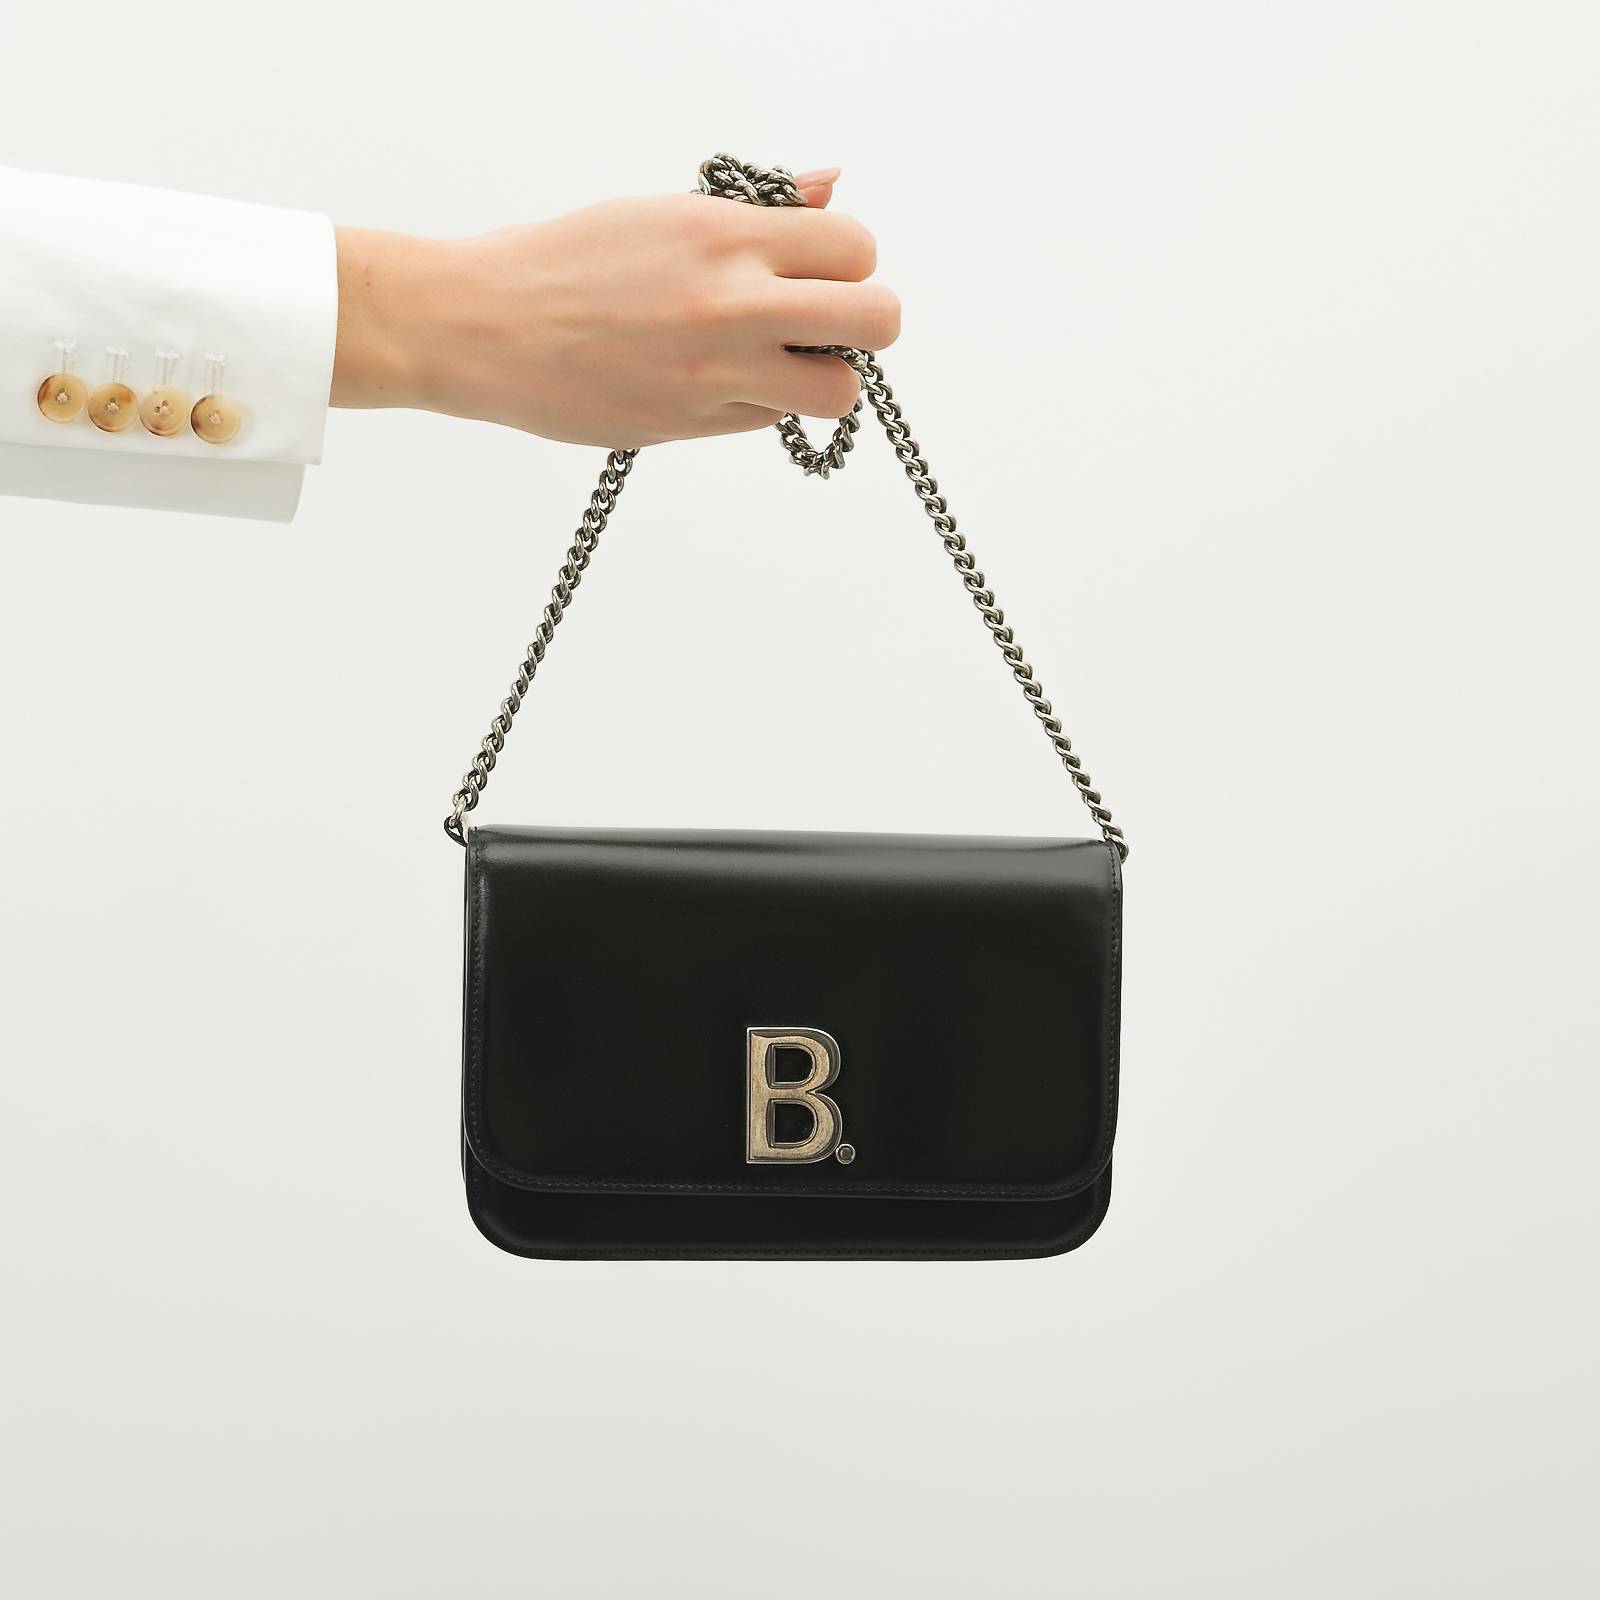 Купить сумку Balenciaga Баленсиага в интернетмагазине  Snikco